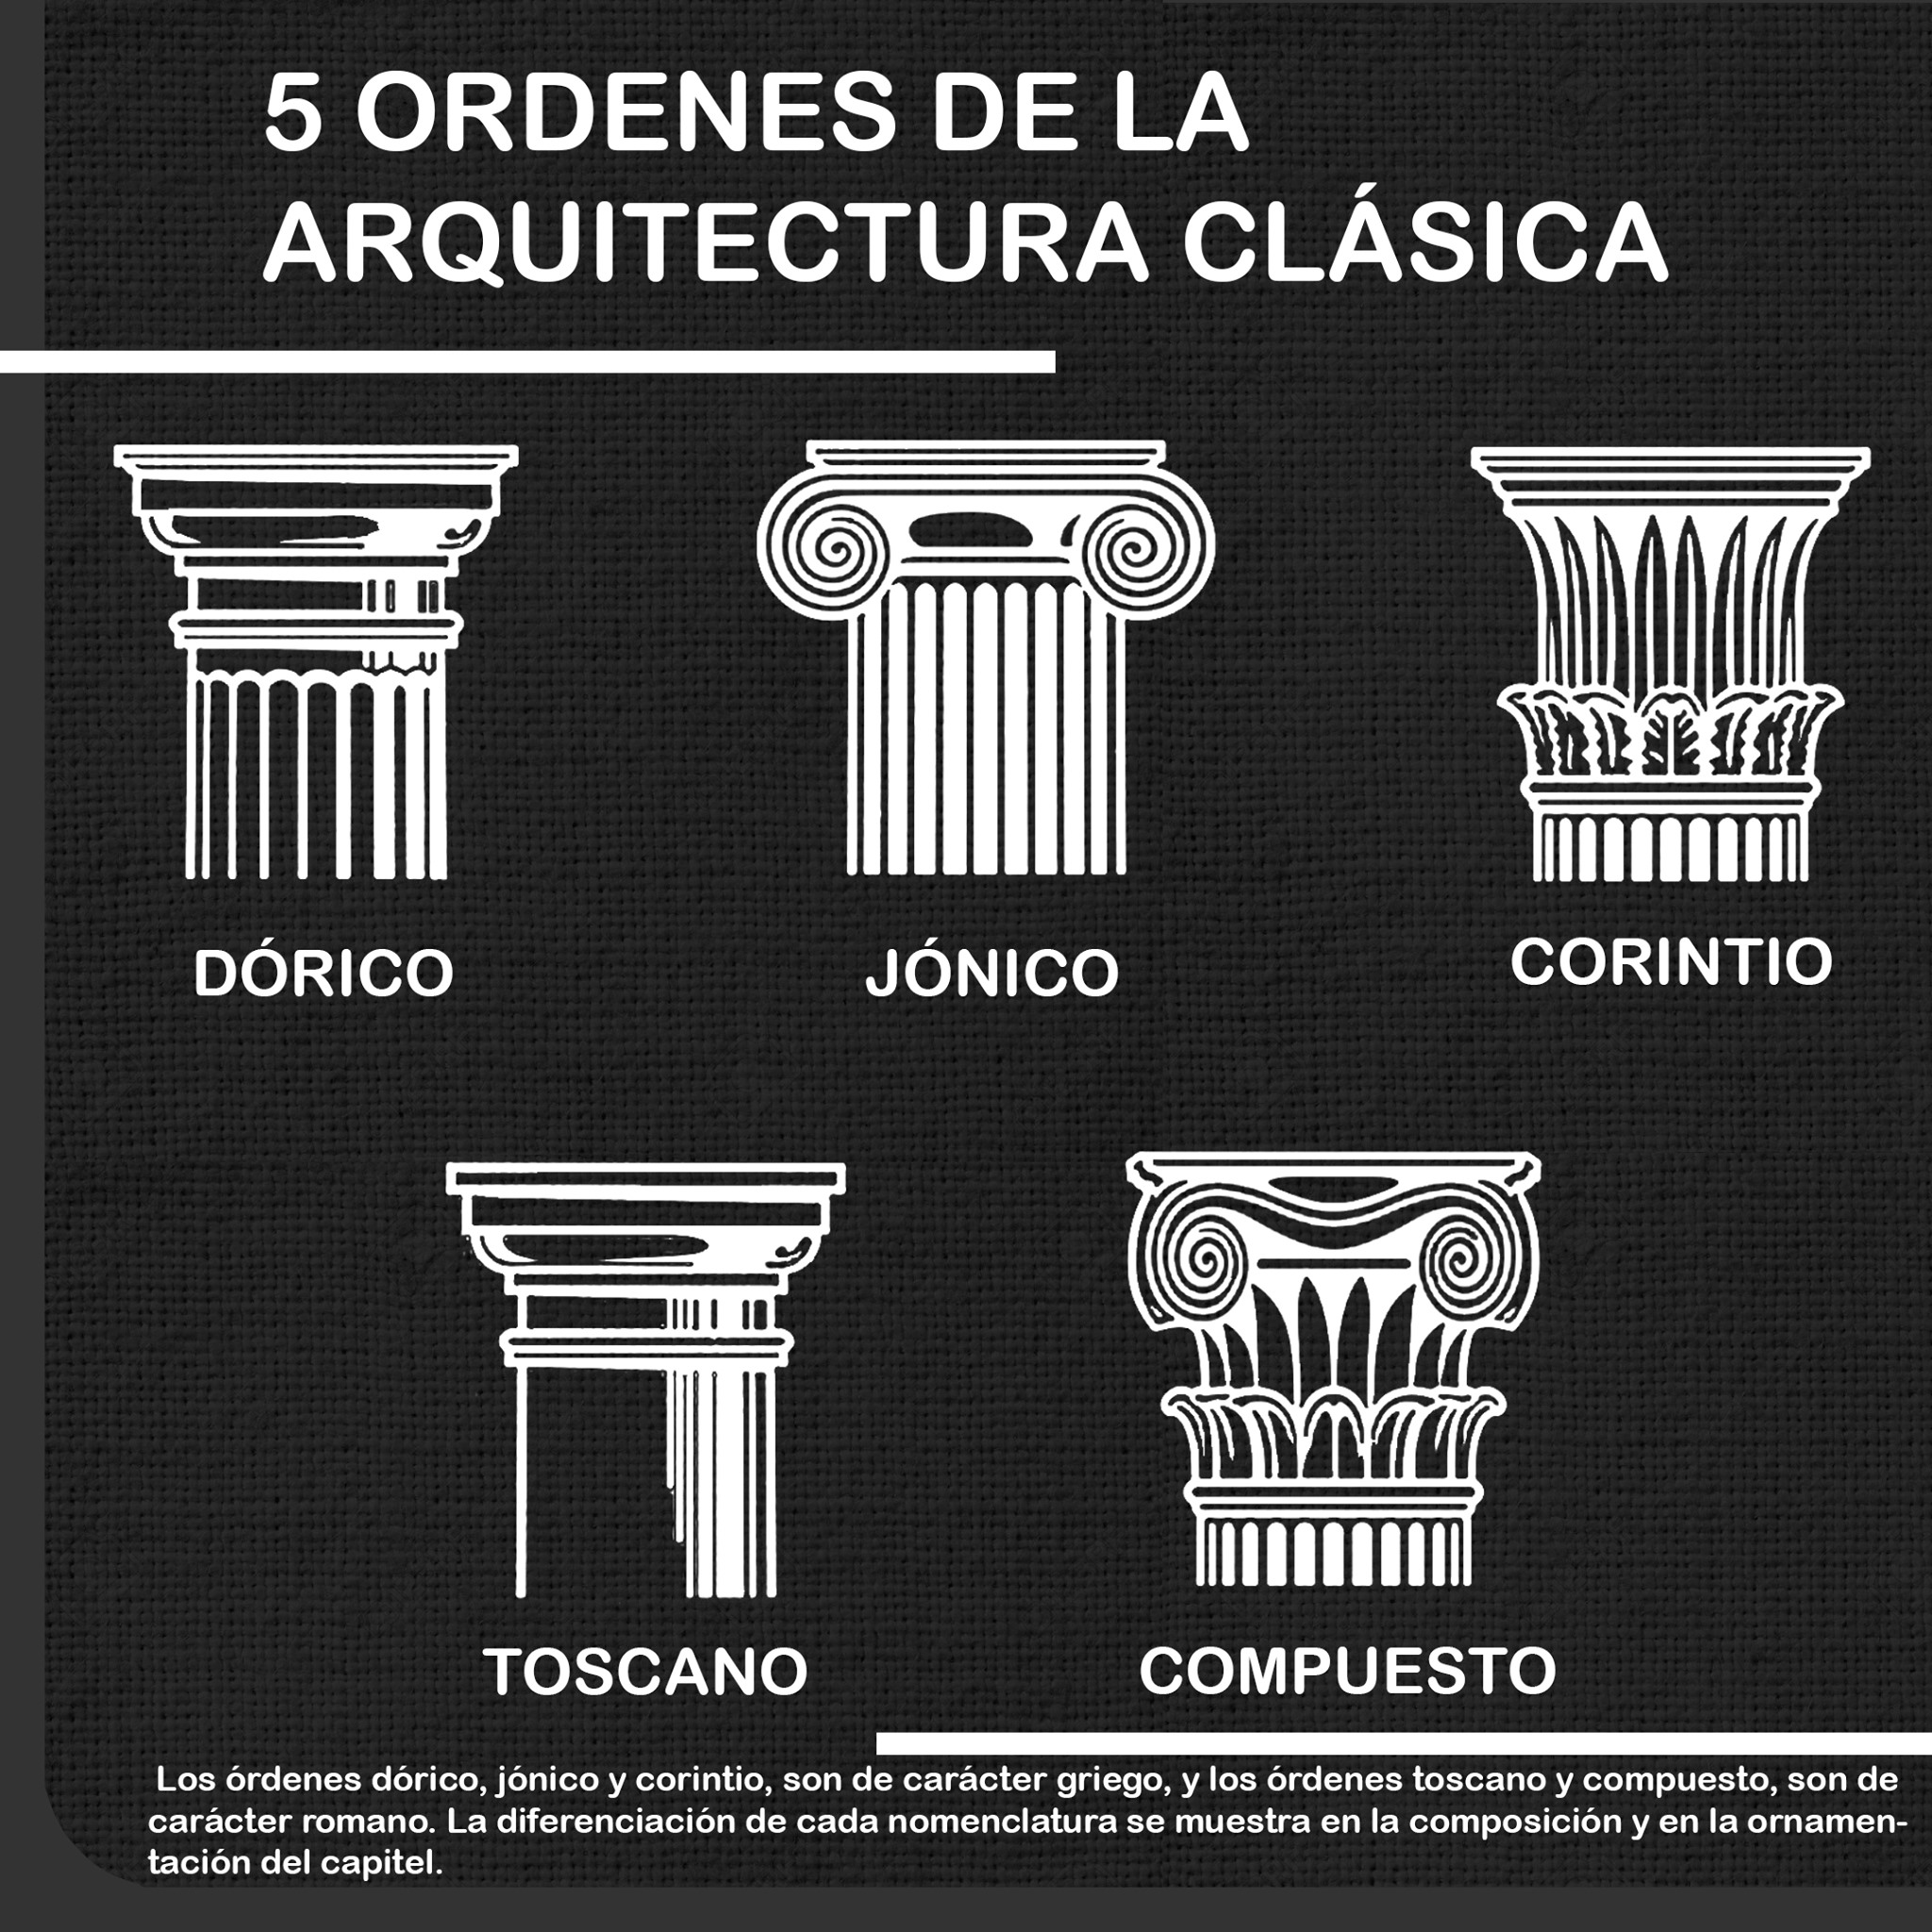  imagen ilustrativa de los Cinco Órdenes de la Arquitectura Clásica